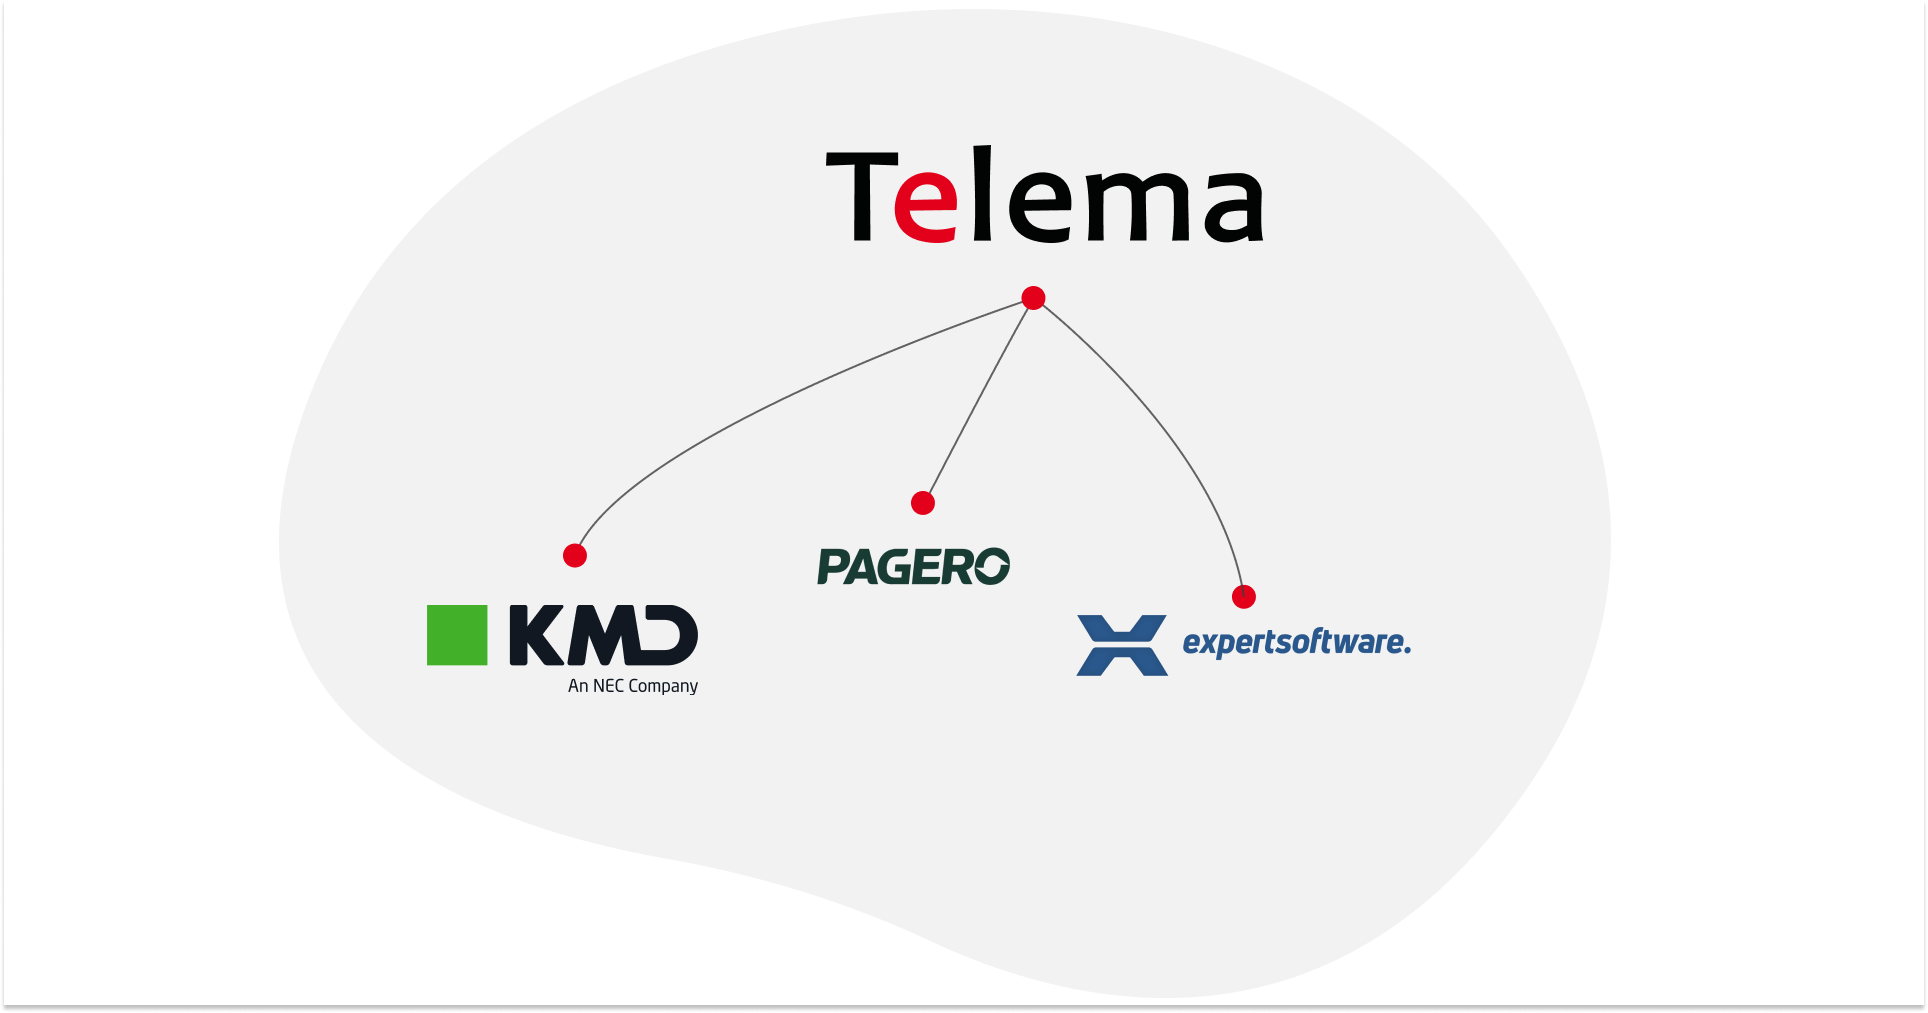 Telema EDI tarptinklinis ryšys dabar apima KMD, Pagero ir Expert Software